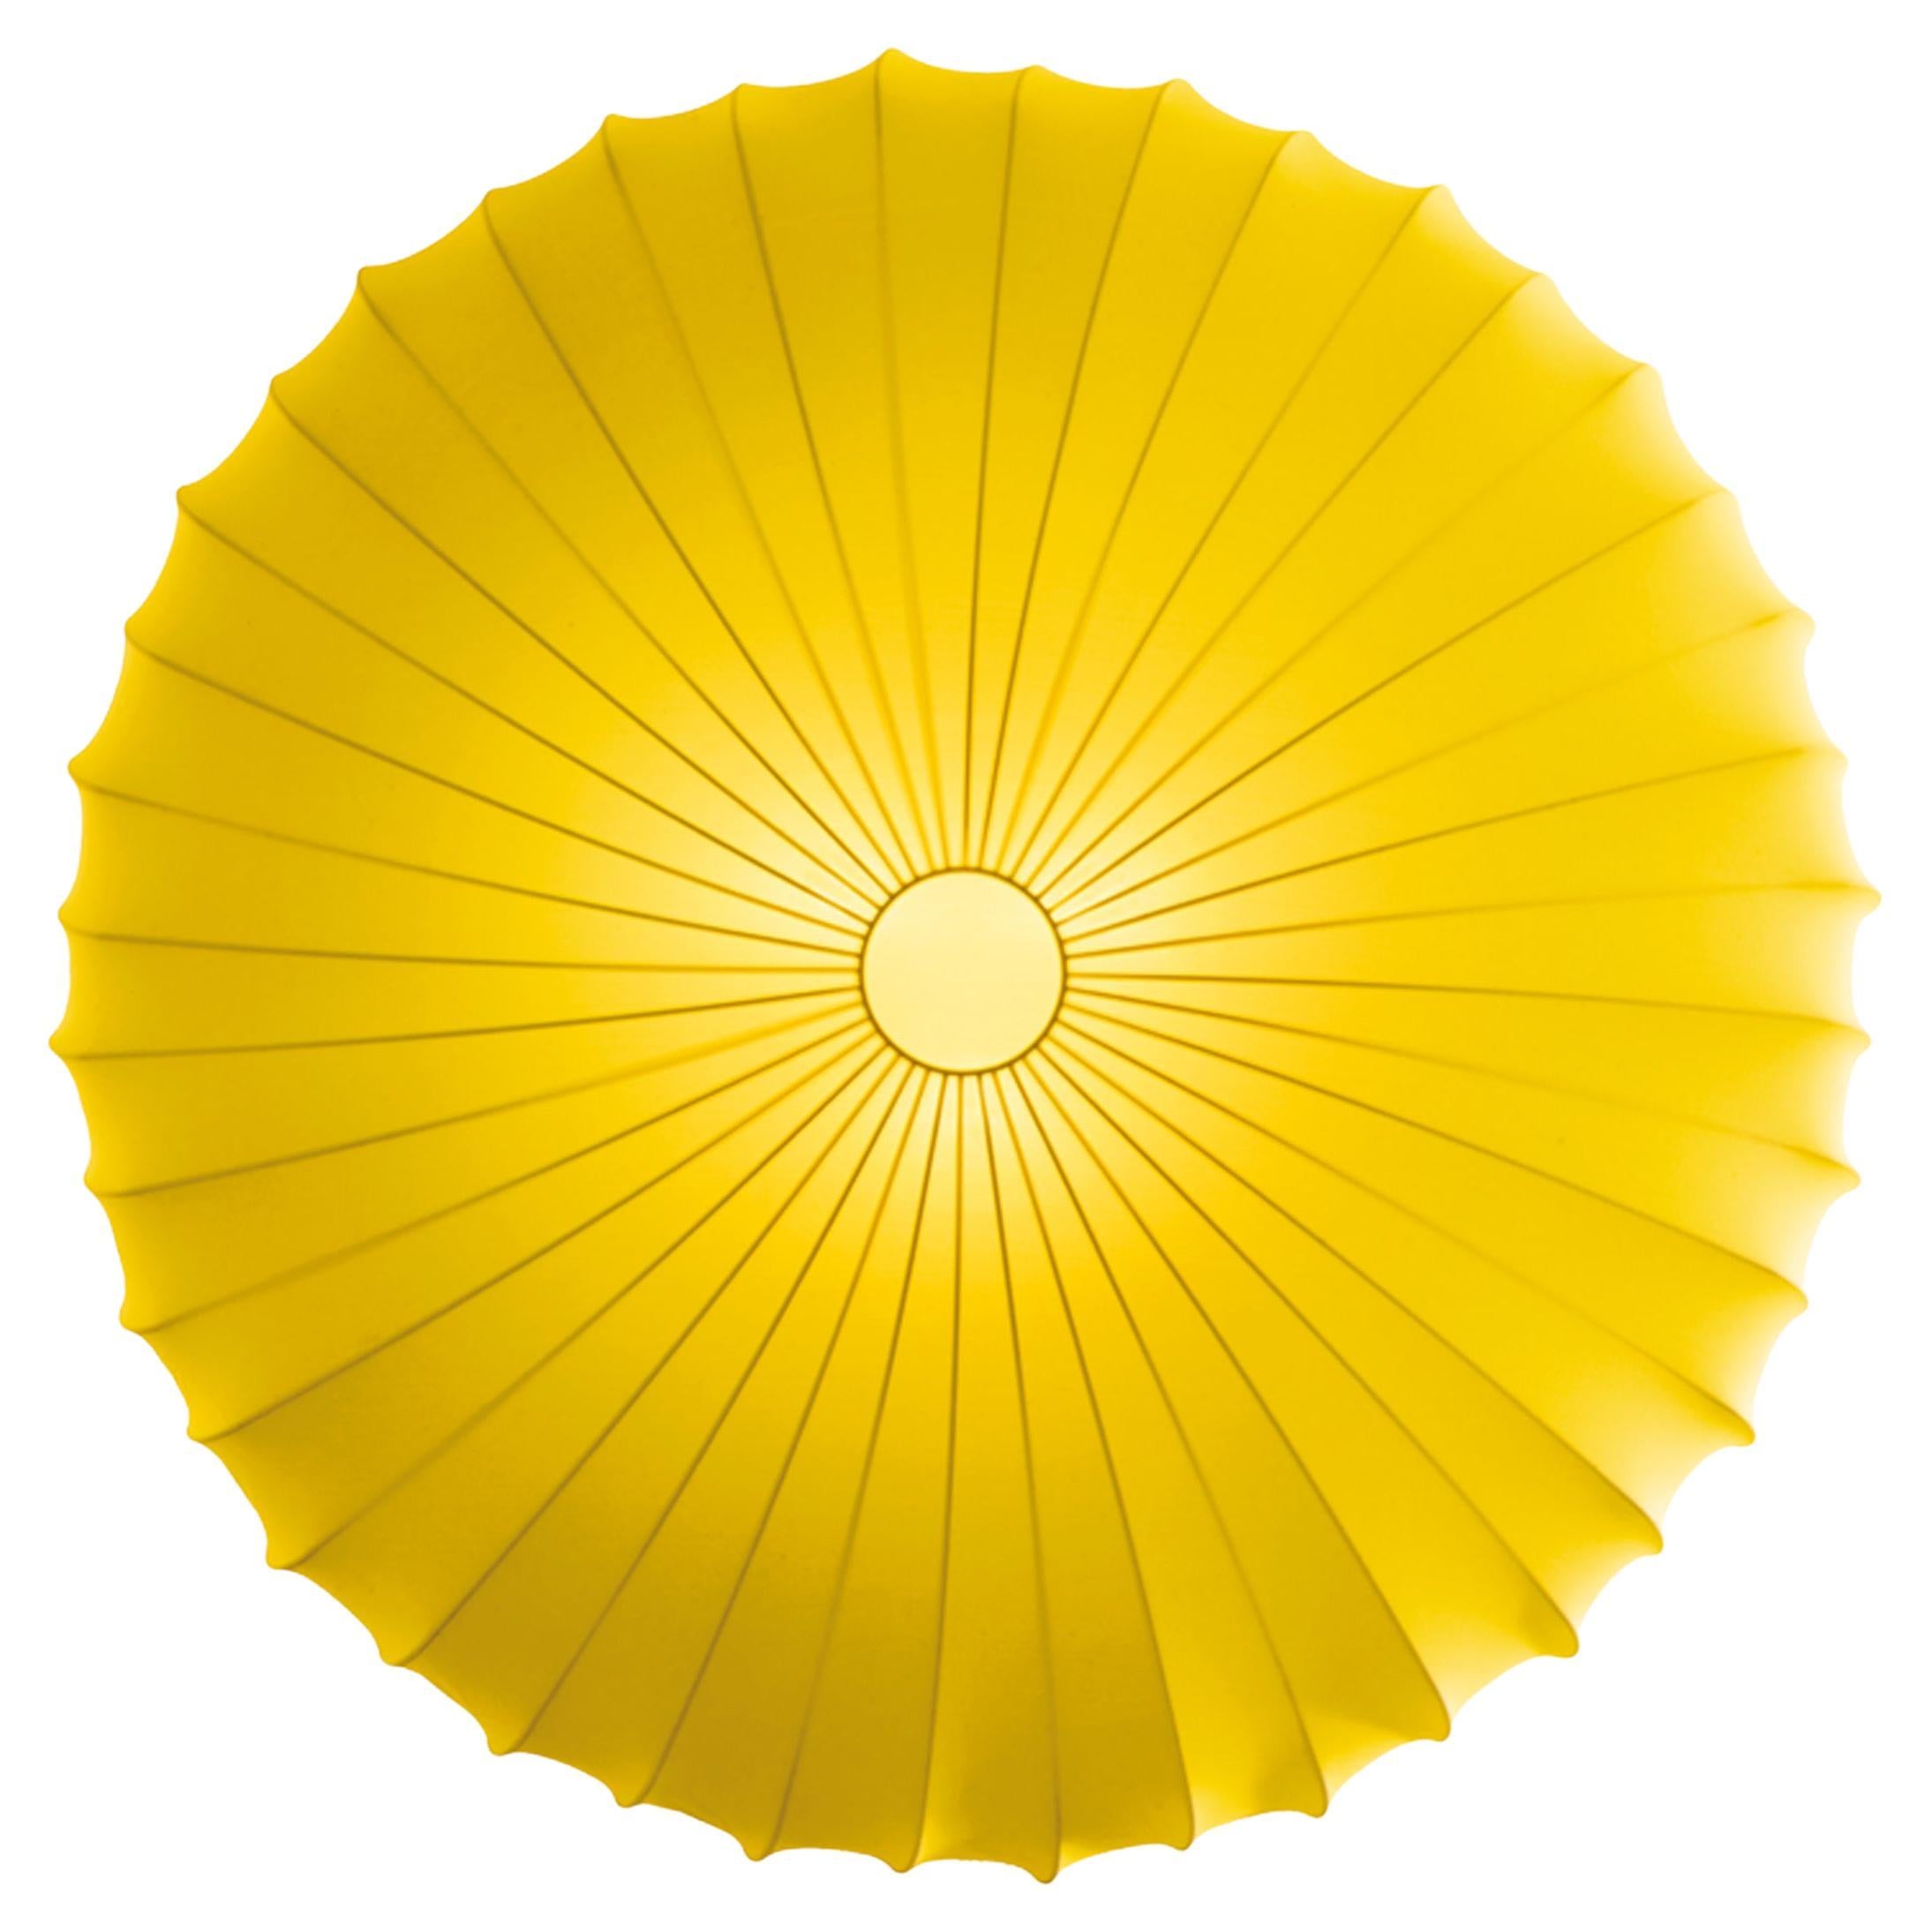 Grand plafonnier Axolight Muse en jaune avec finition métallique blanche